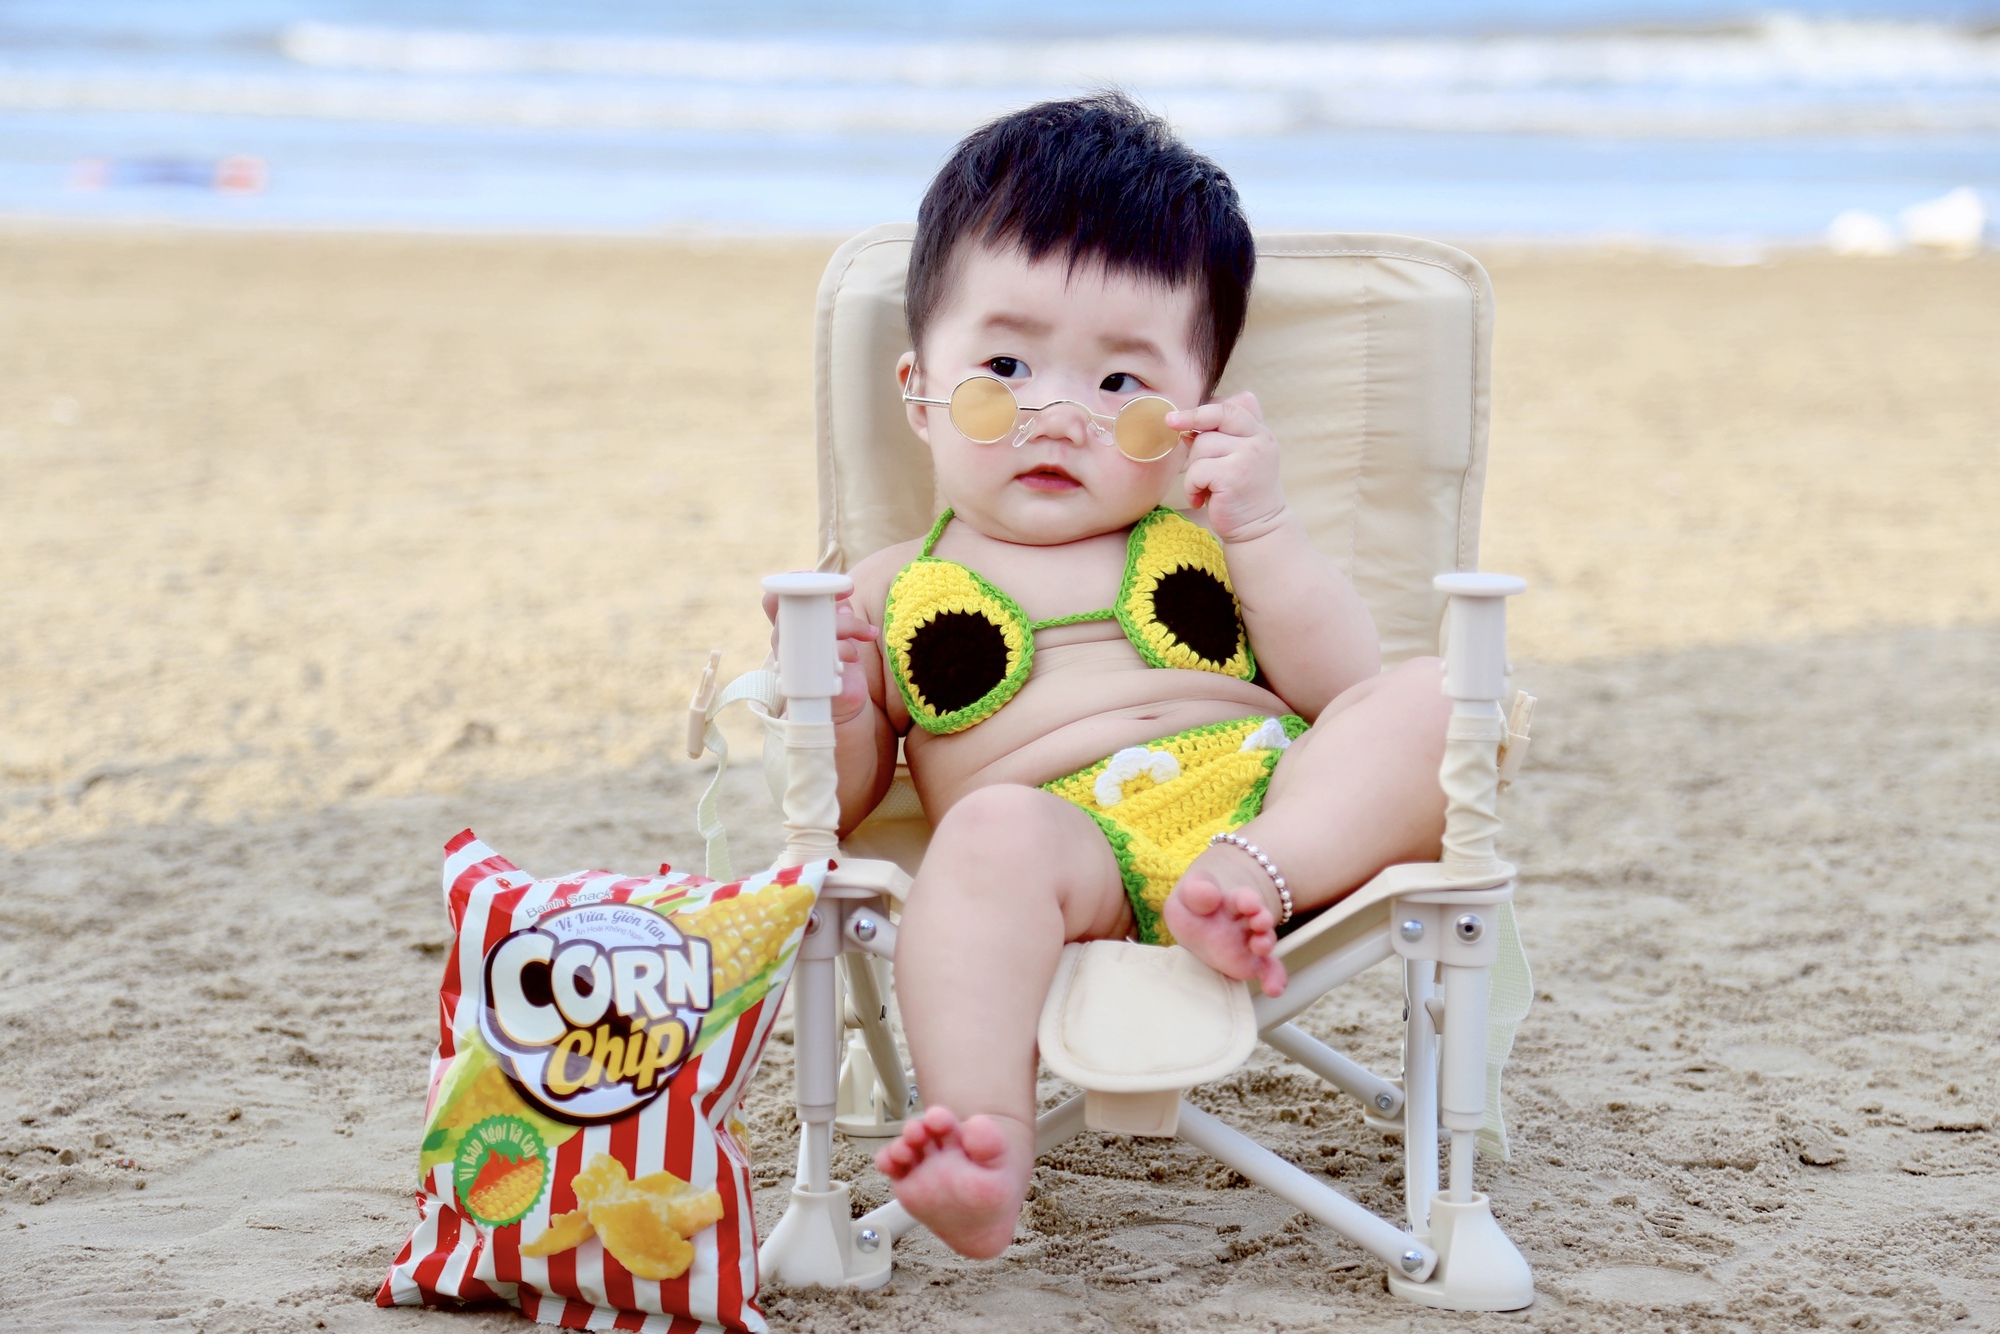 Được mẹ cho đi biển, bé gái 7 tháng tuổi tung bộ ảnh bikini lộ mỡ bụng siêu đáng yêu - Ảnh 1.